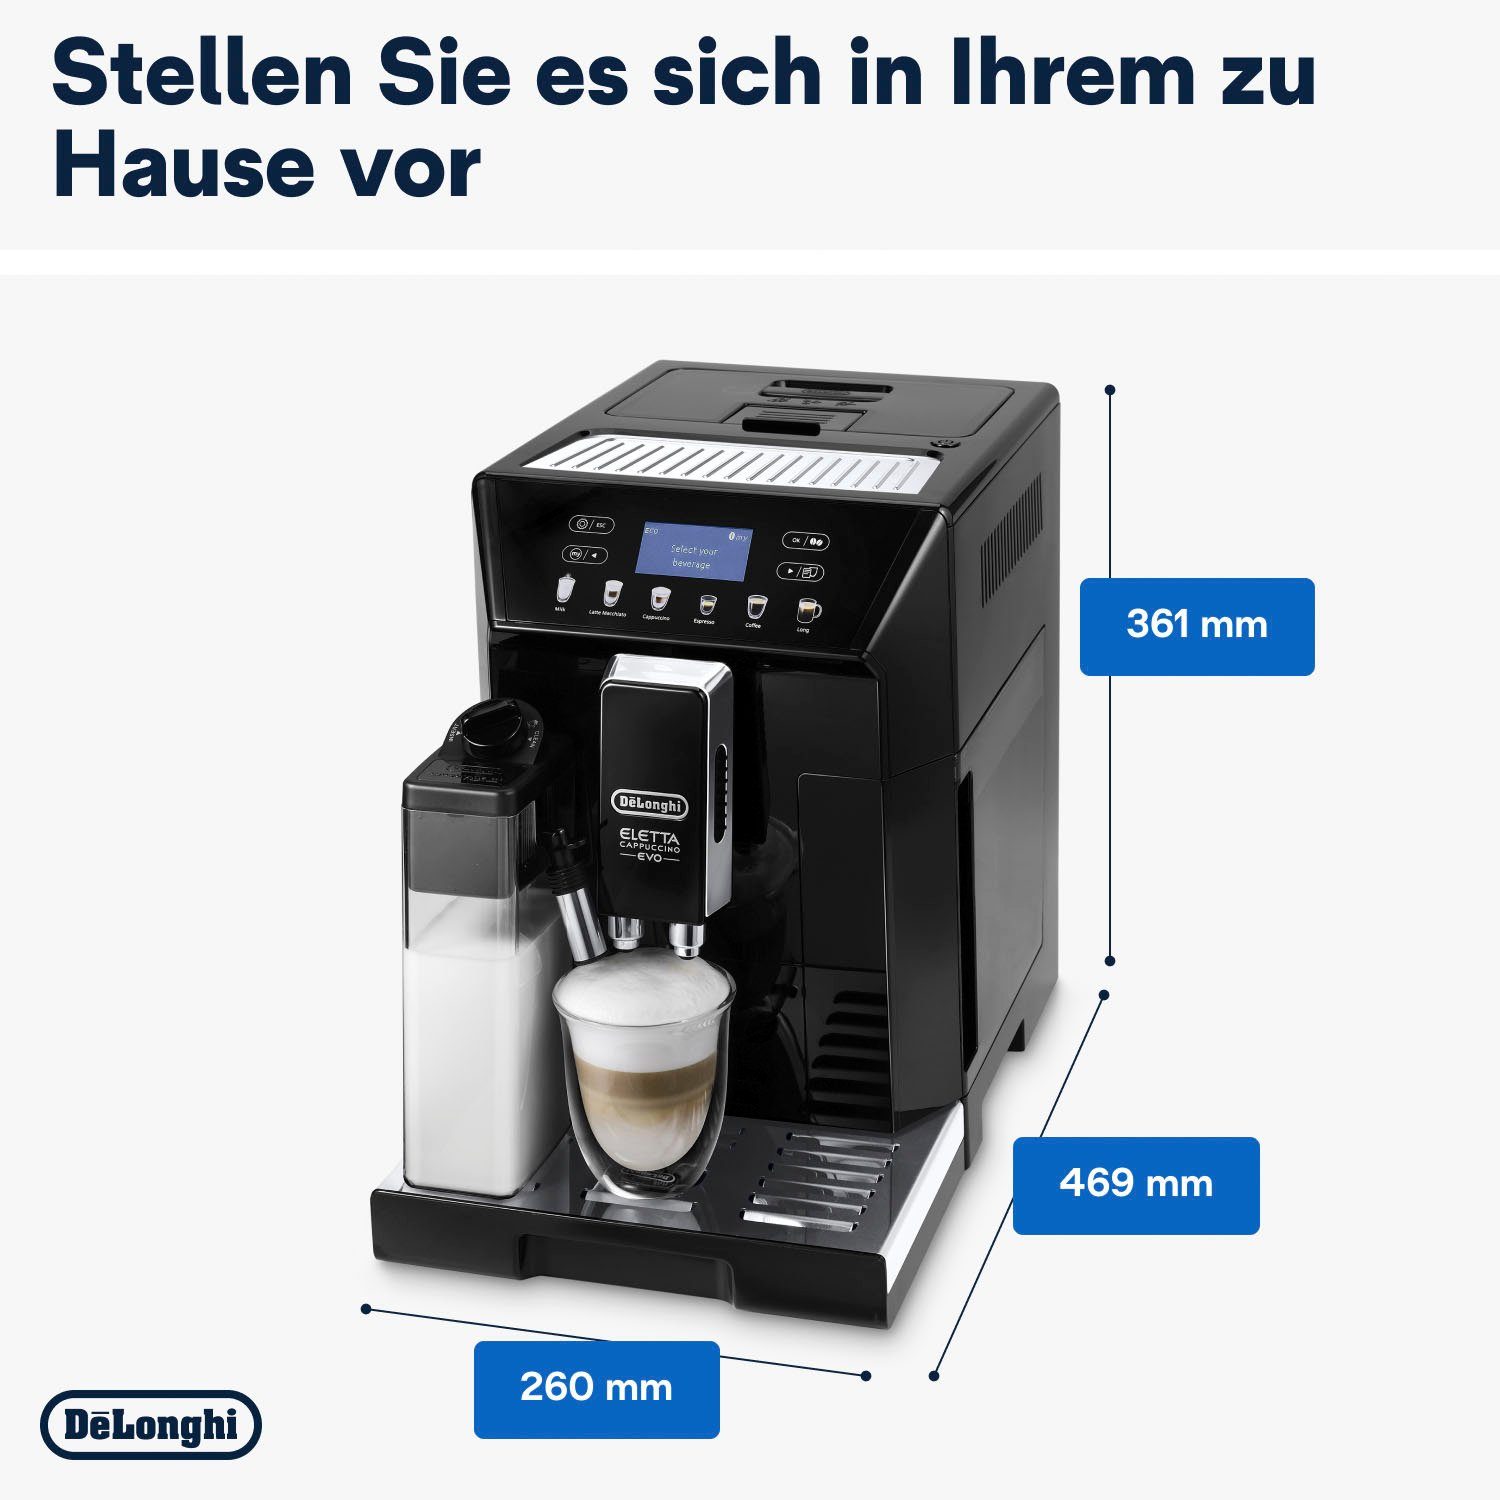 De'Longhi Kaffeevollautomat € inkl. von 46.860.B im Pflegeset schwarz, ECAM UVP 31,99 Wert Eletta Evo